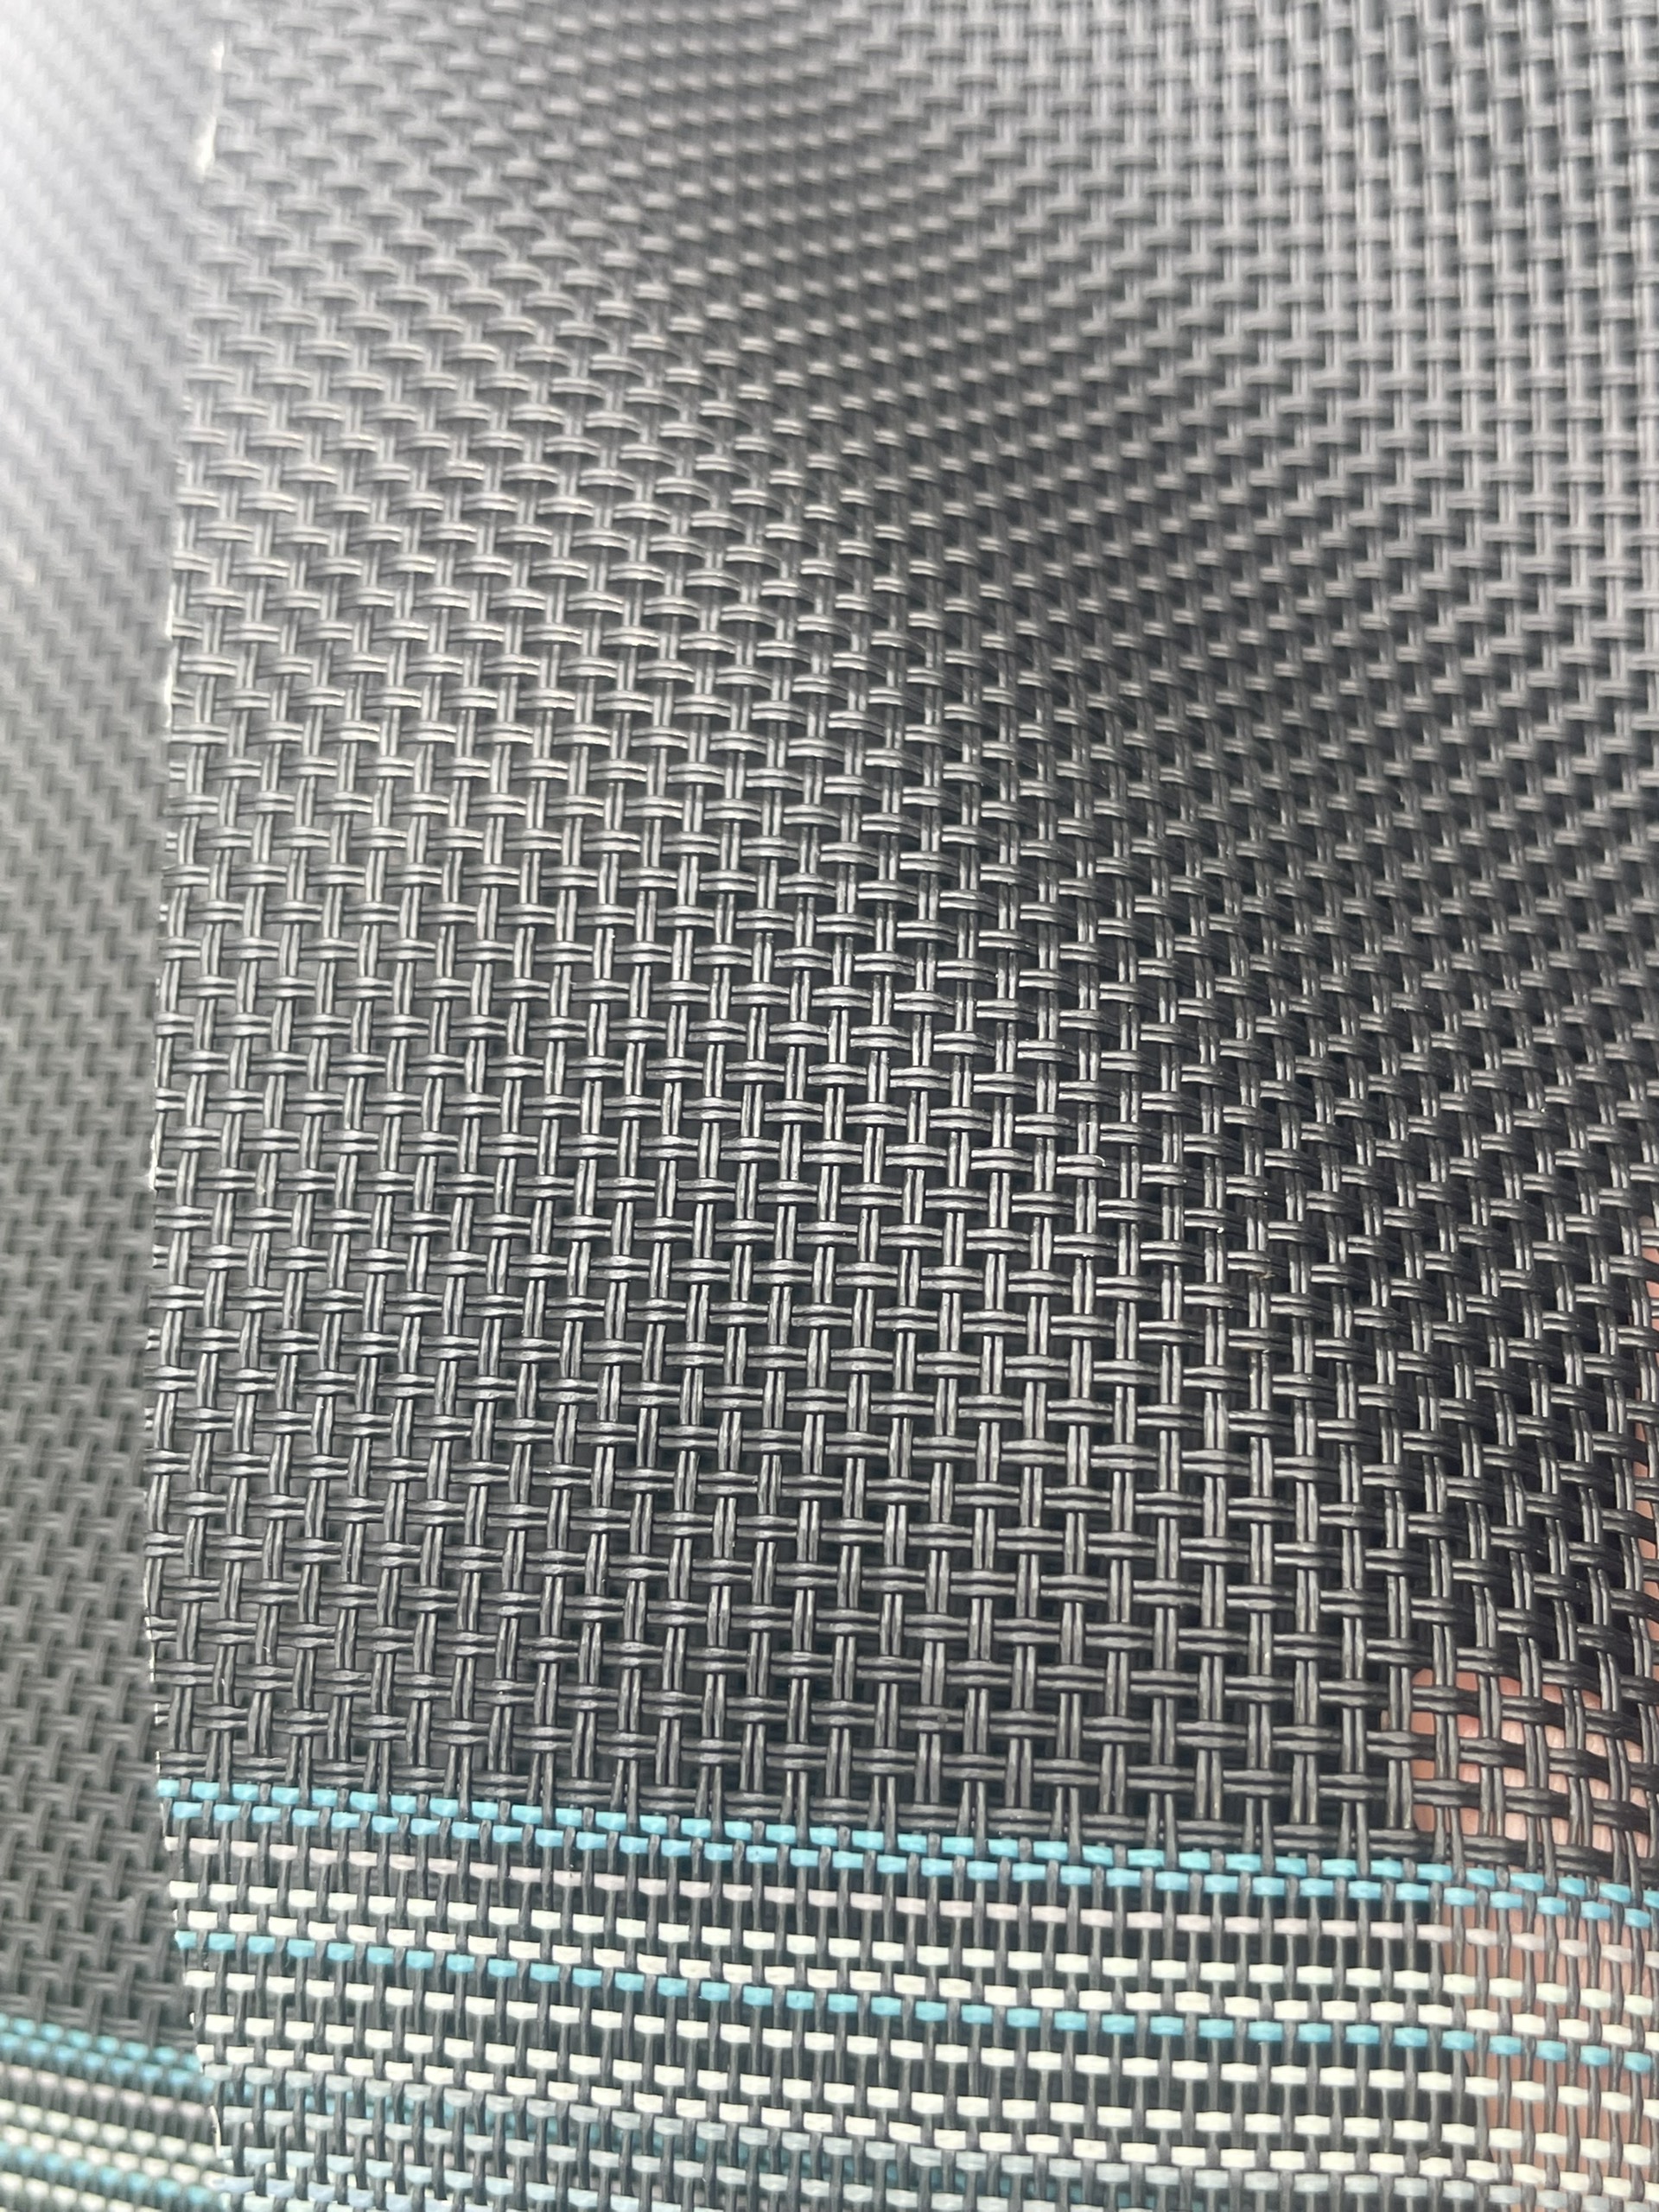 Vải lưới Textilene Fabric vật liệu cao cấp ngành ngoại thất - Làm ghế sofa, ghế hồ bơi - Khổ lưới 1.5m màu đen (2 Sợi ngang x 2 sợi dọc)